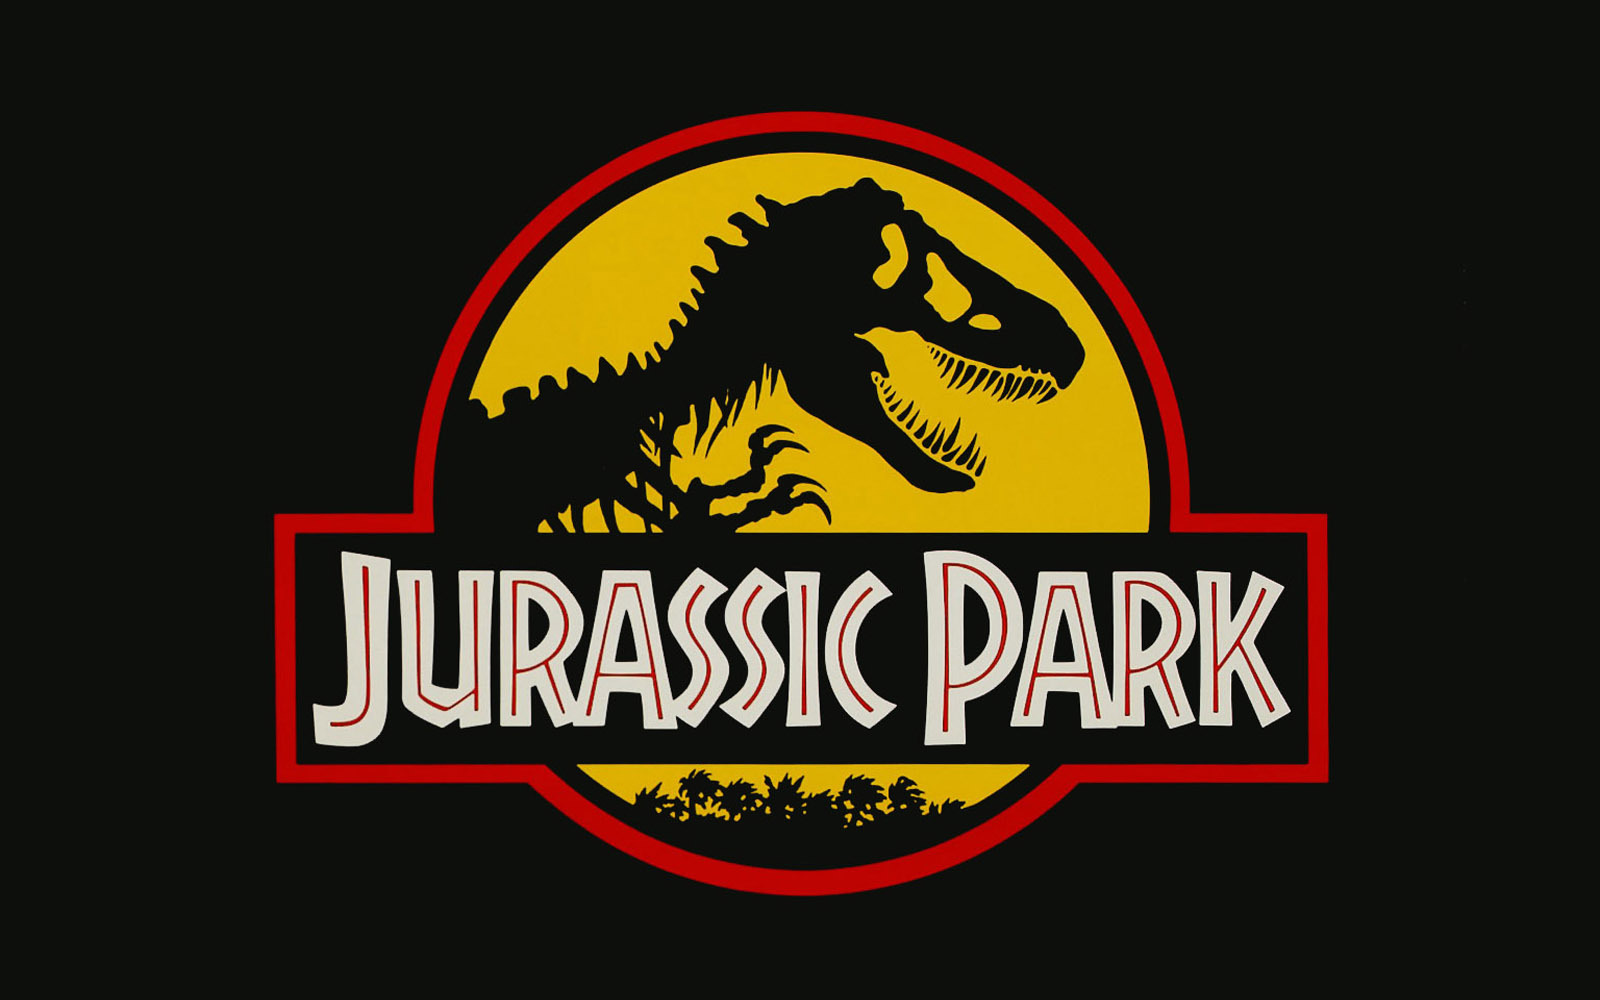 Ketika Peretas Menyusupi Jurassic Park: Situs Web Dunia yang Hilang